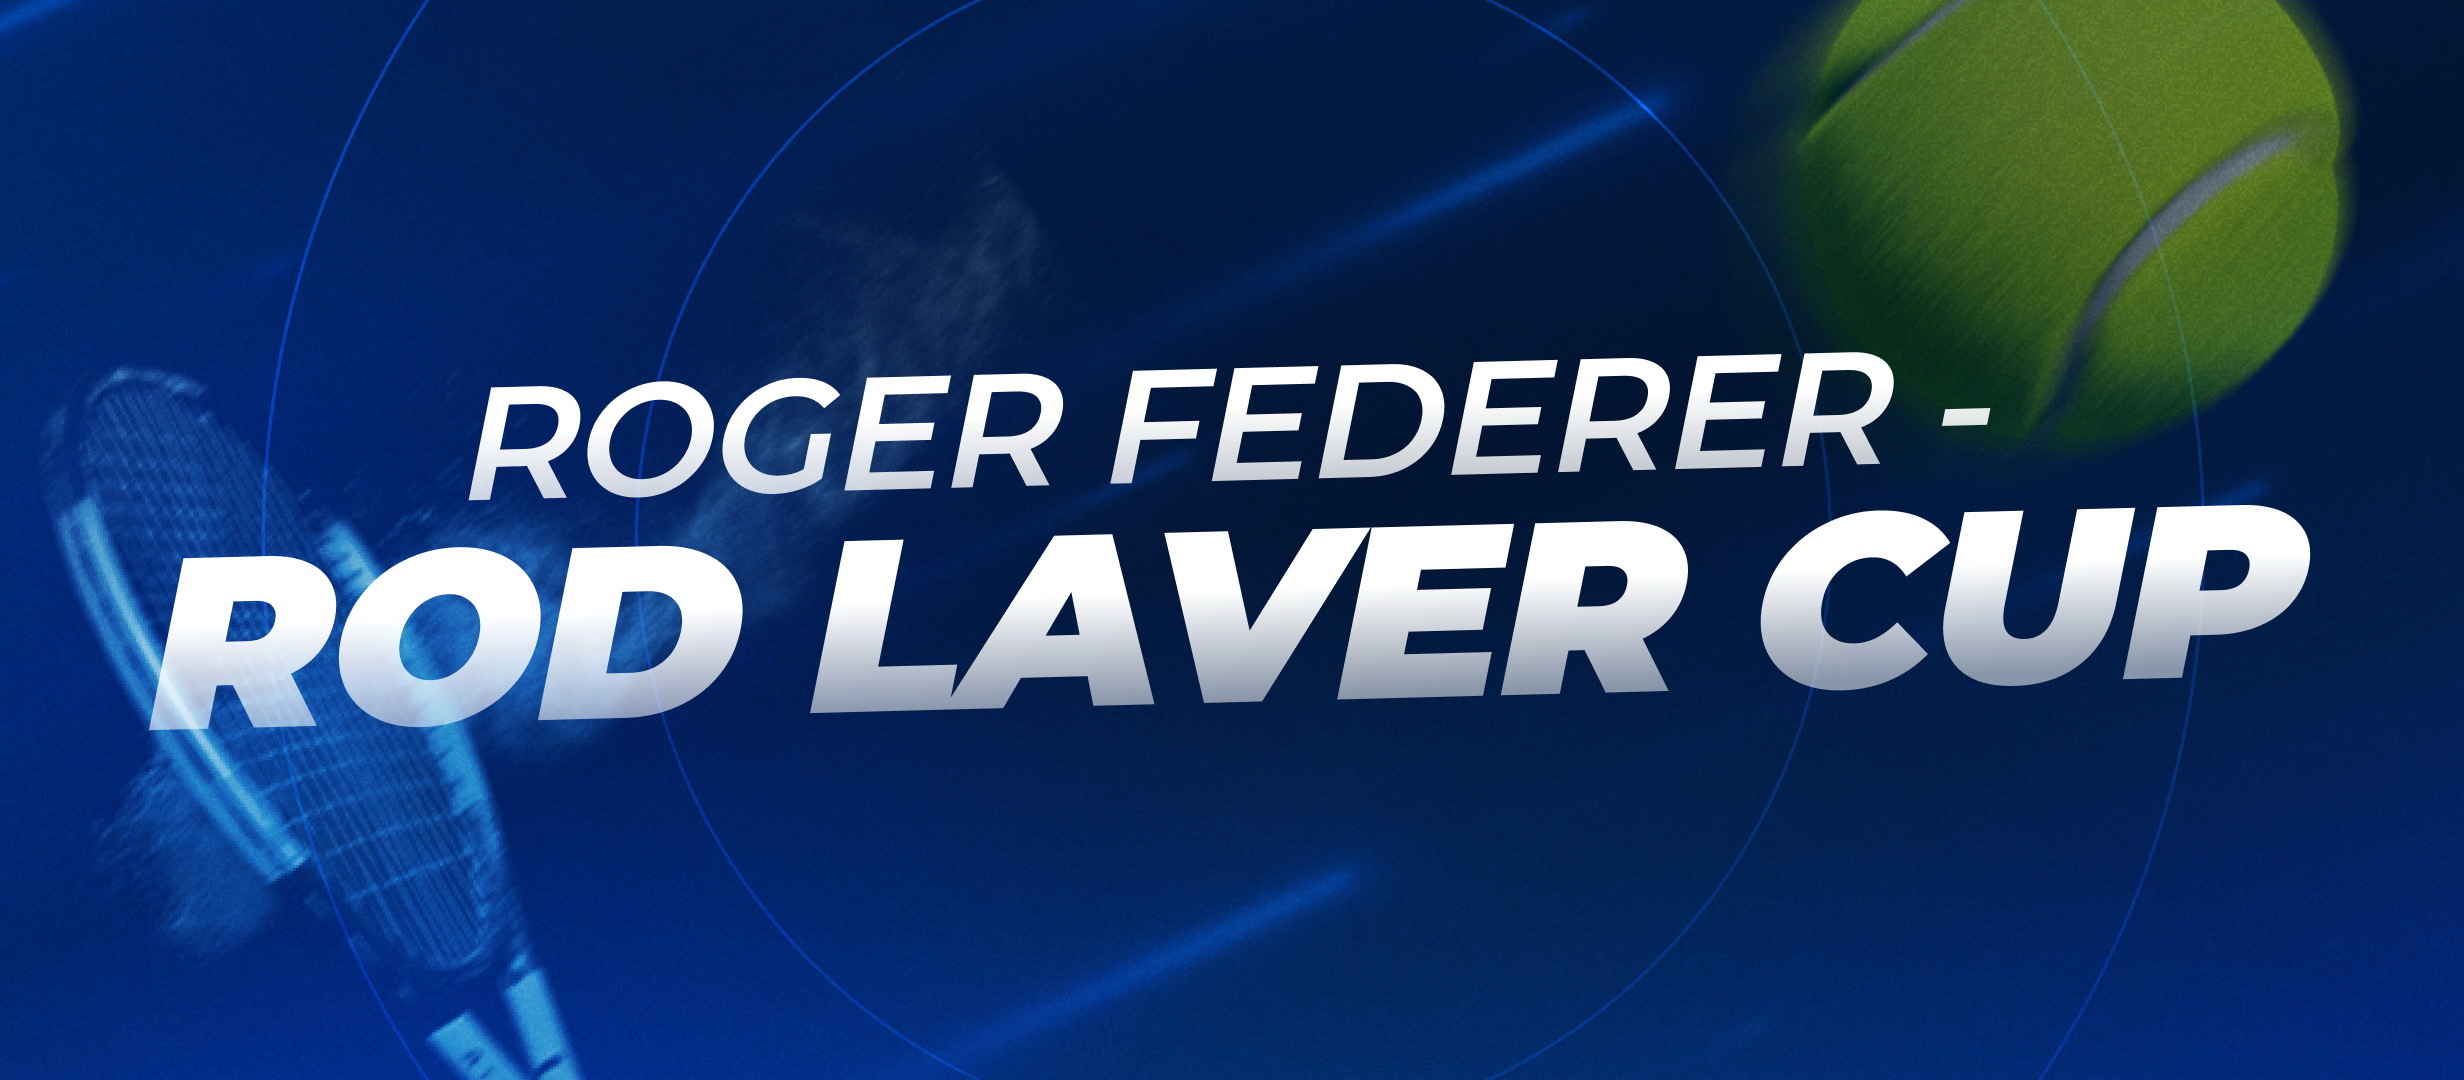 Rod Laver Cup 2022 - cantecul de lebada al lui Roger Federer